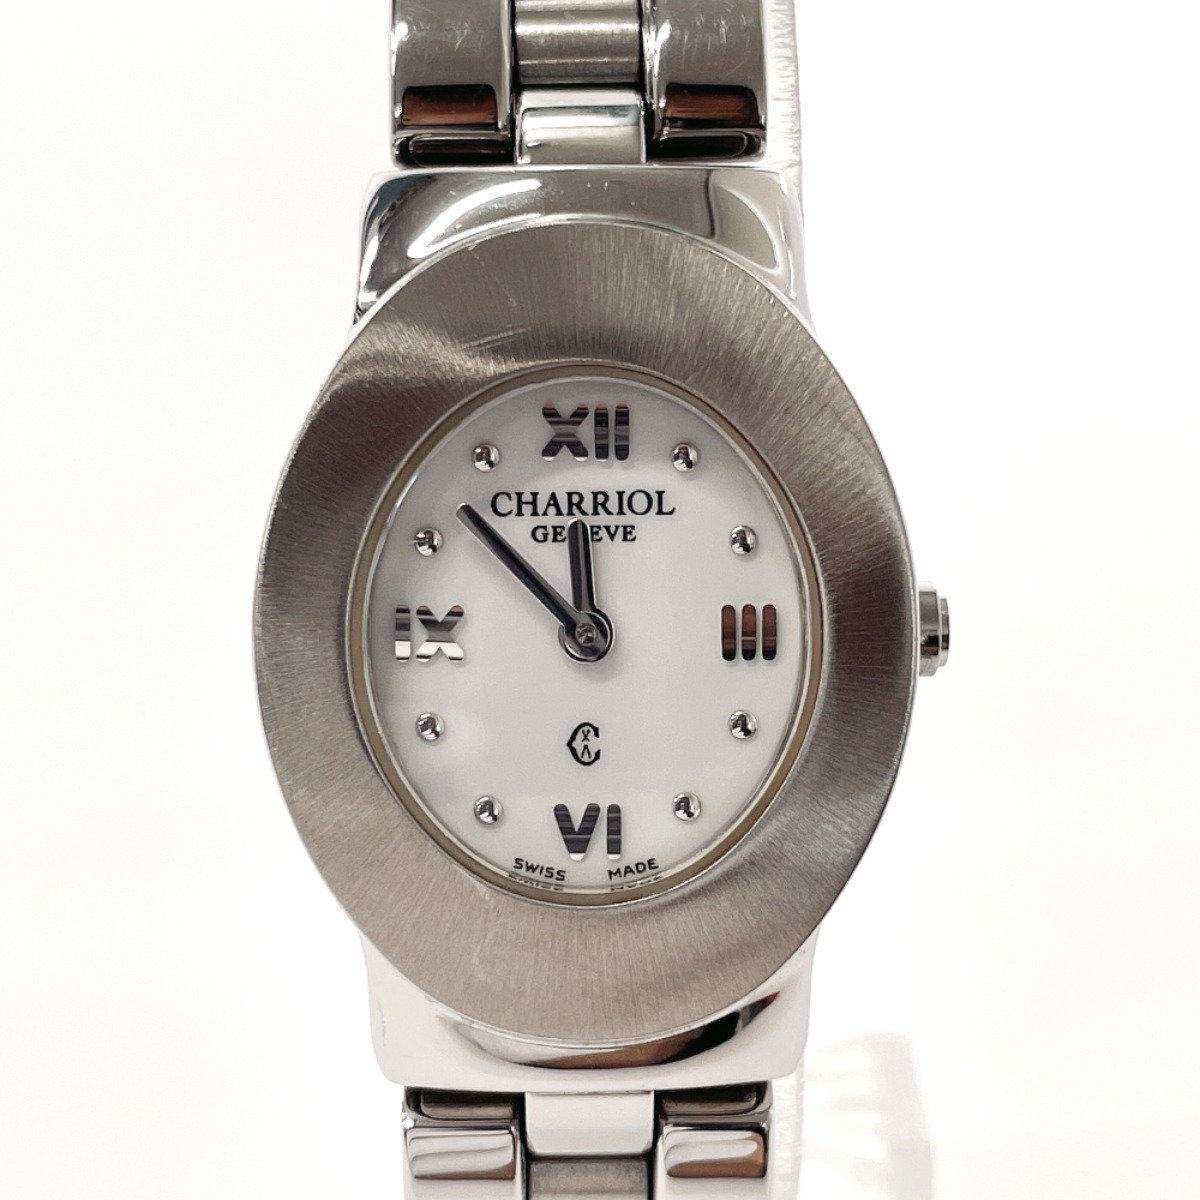  Charriol CHARRIOL наручные часы AZURO300900a Zoo ro нержавеющая сталь серебряный кварц 